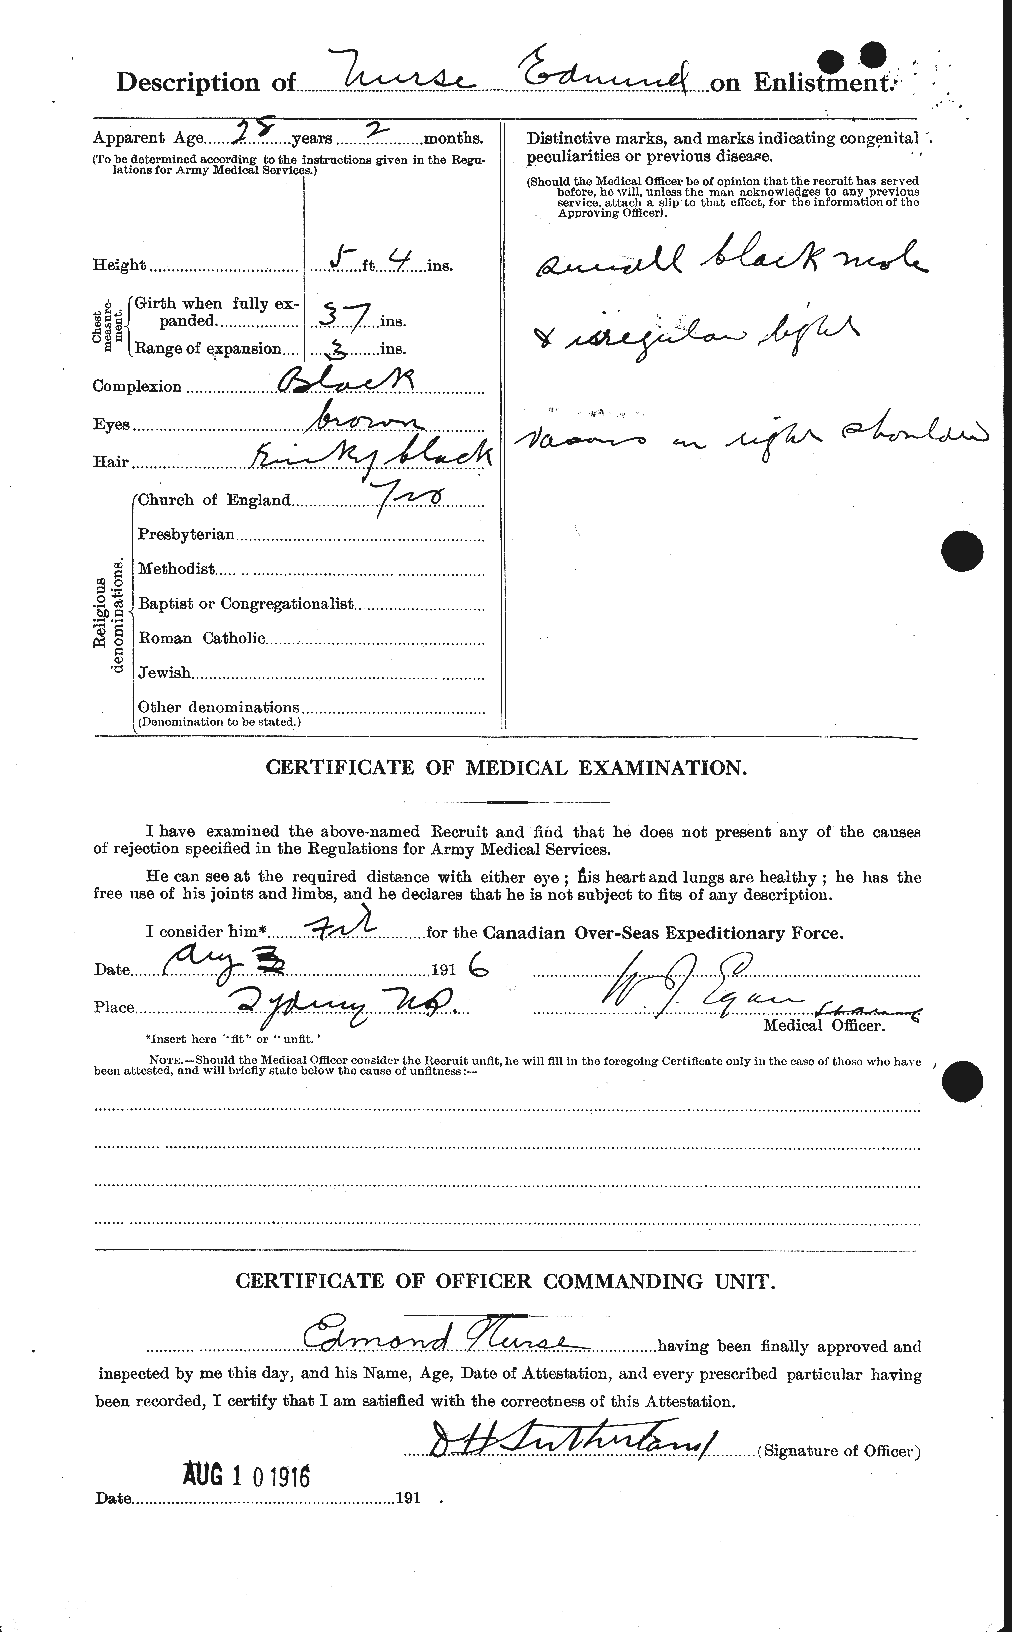 Dossiers du Personnel de la Première Guerre mondiale - CEC 553362b